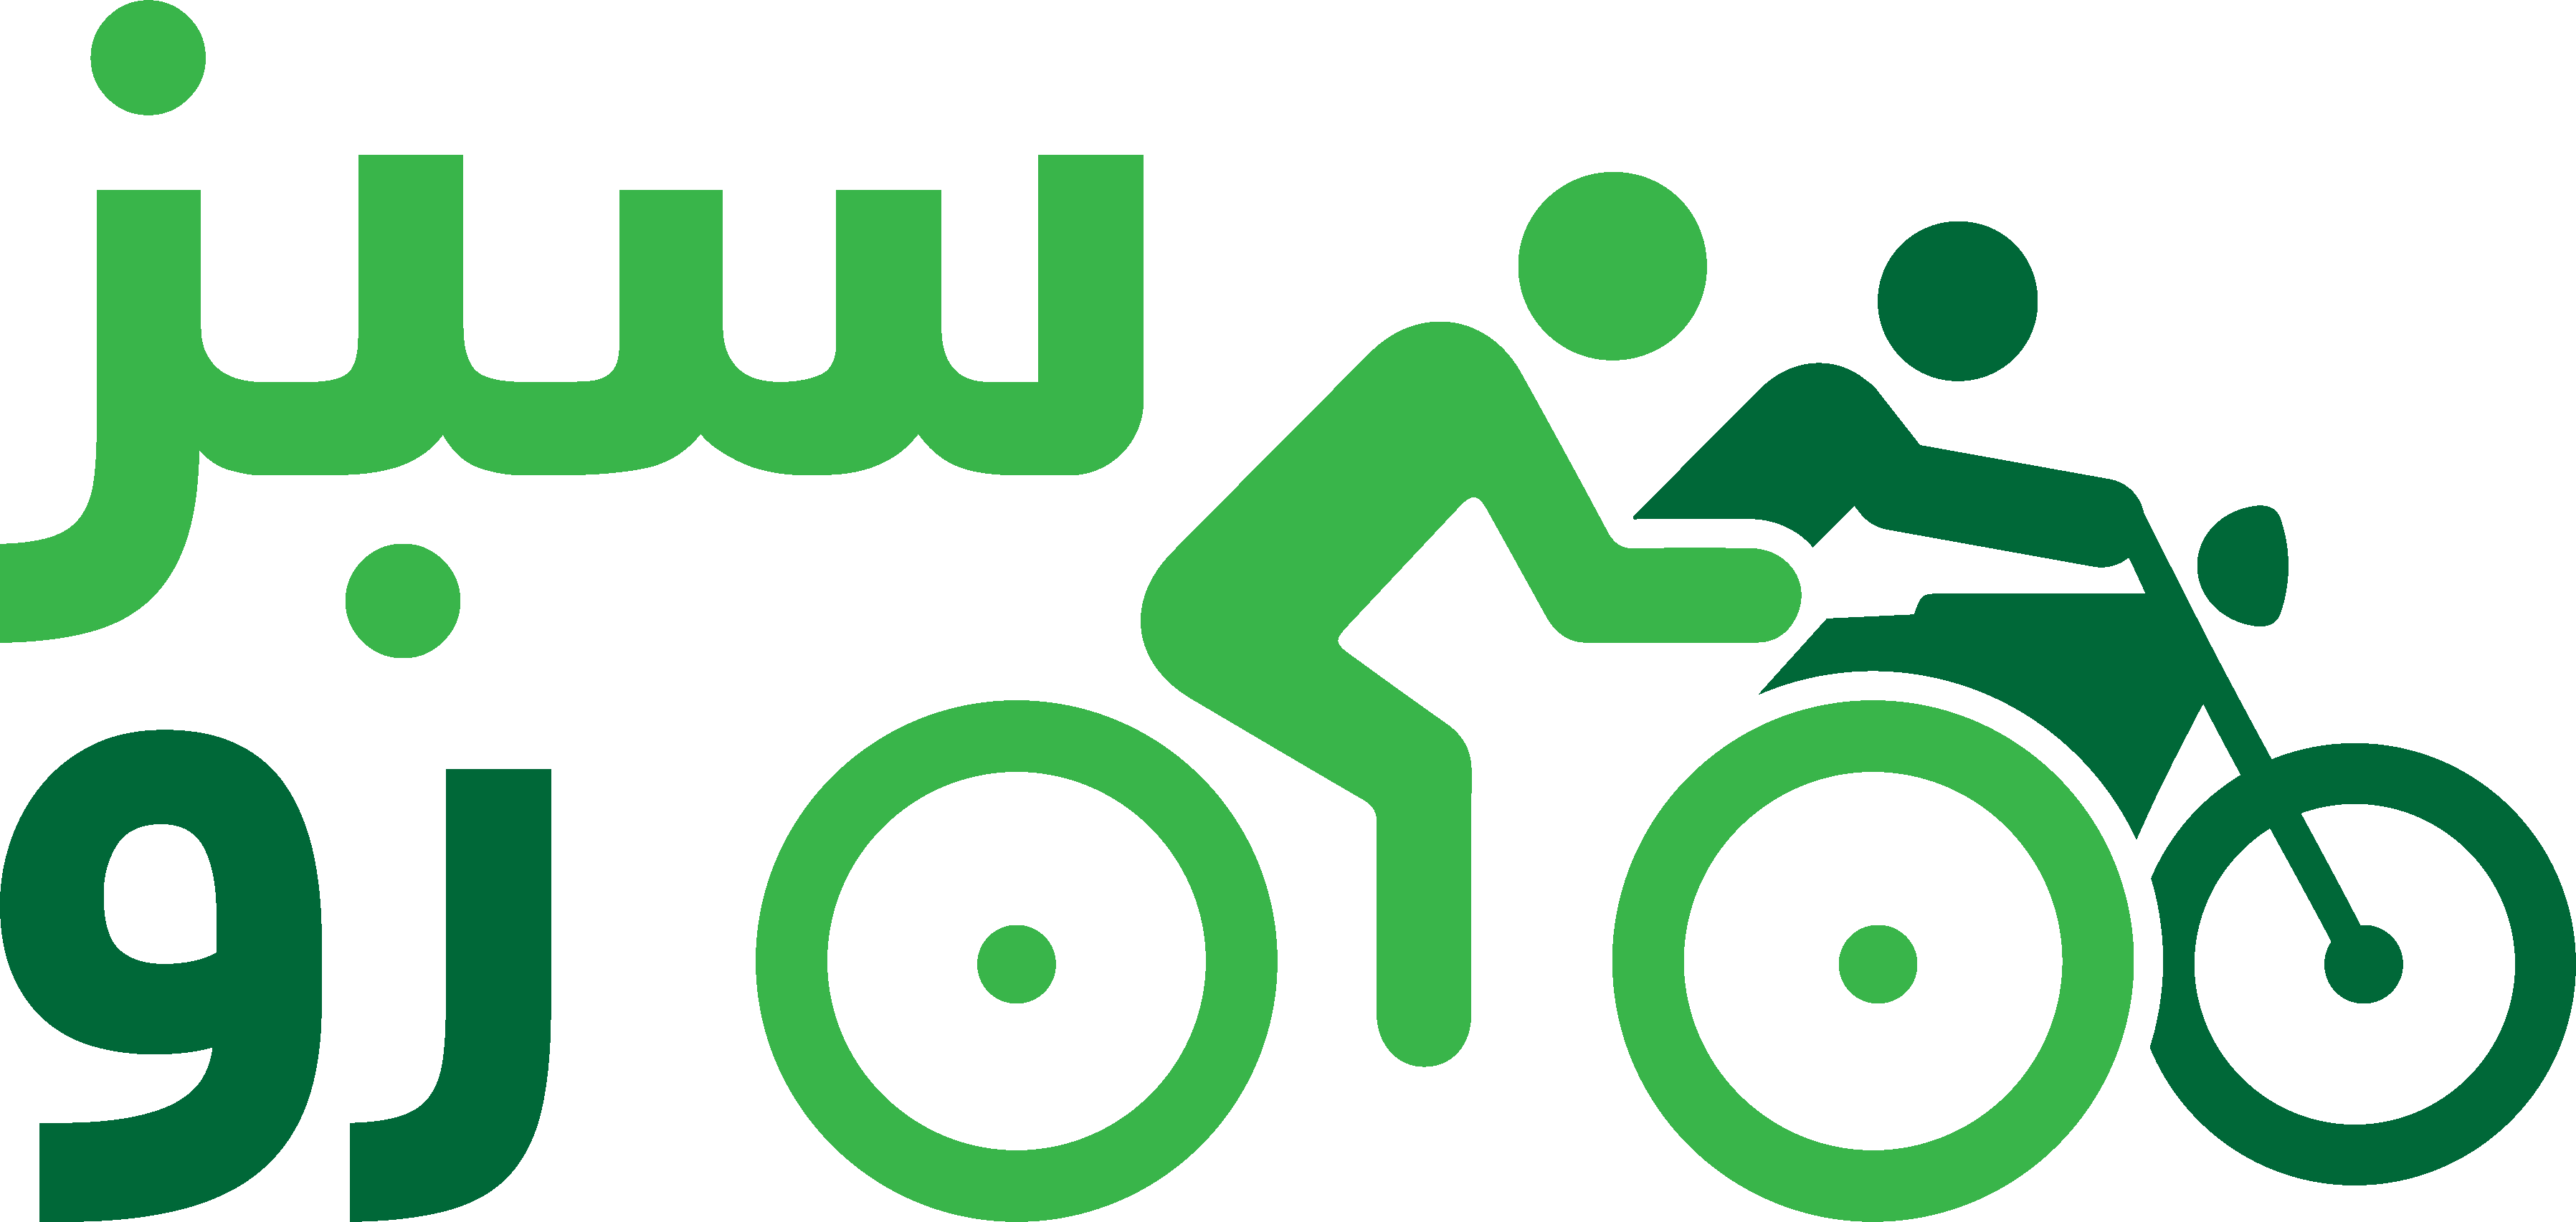 سبزرو، فروشگاه بزرگ دوچرخه، دوچرخه برقی و موتور برقی